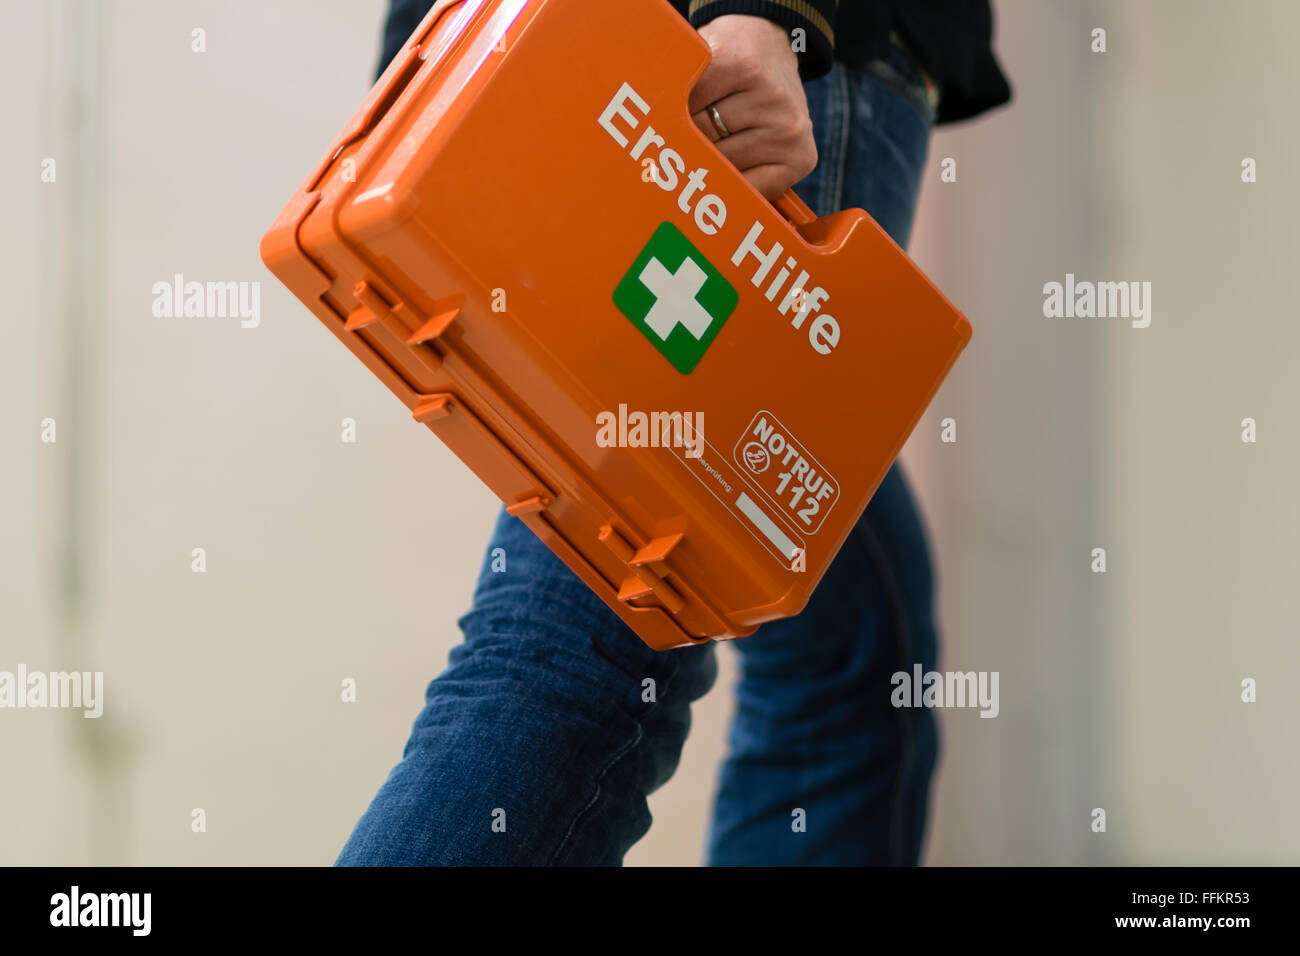 Primo soccorso dopo un incidente sul lavoro. First responder con kit di primo soccorso, Germania. Foto Stock